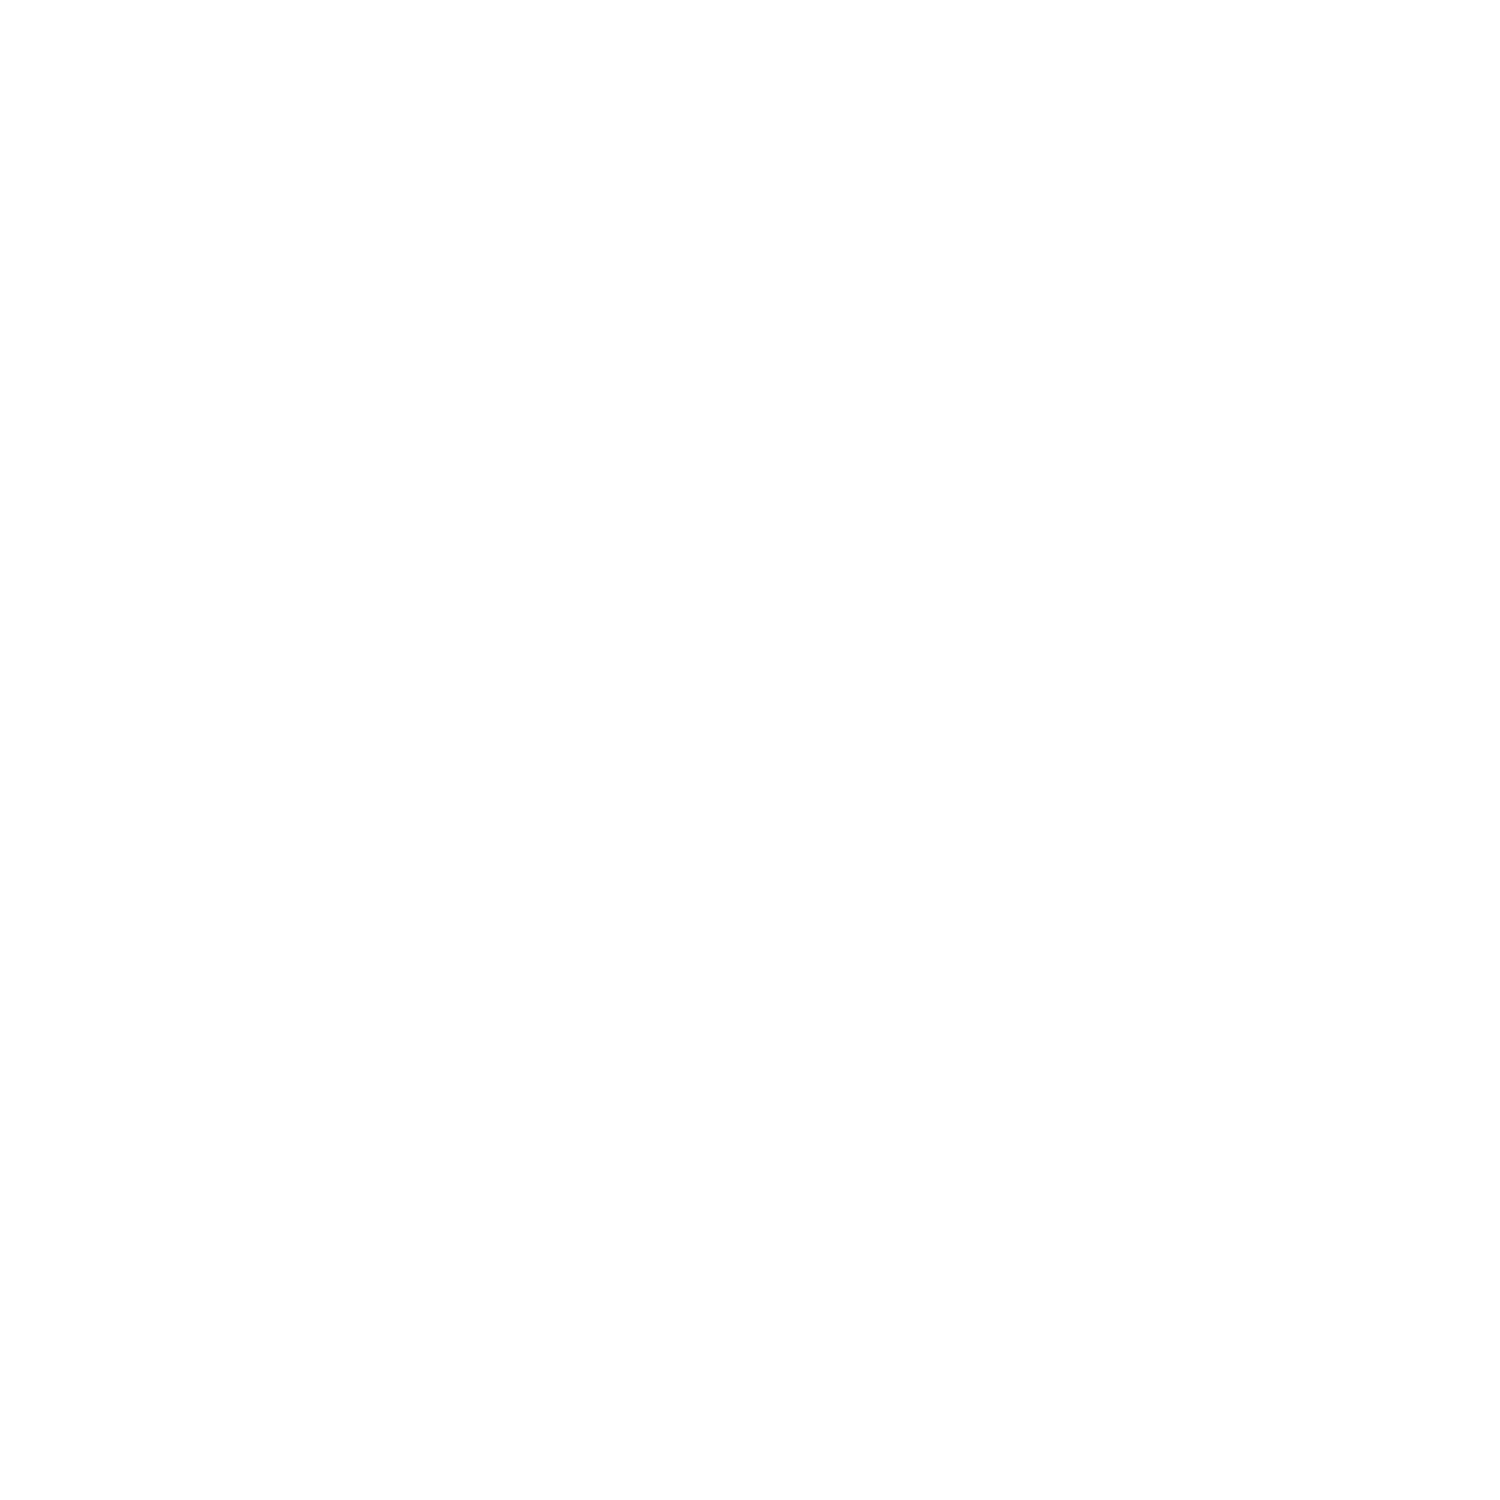 TraceCloud